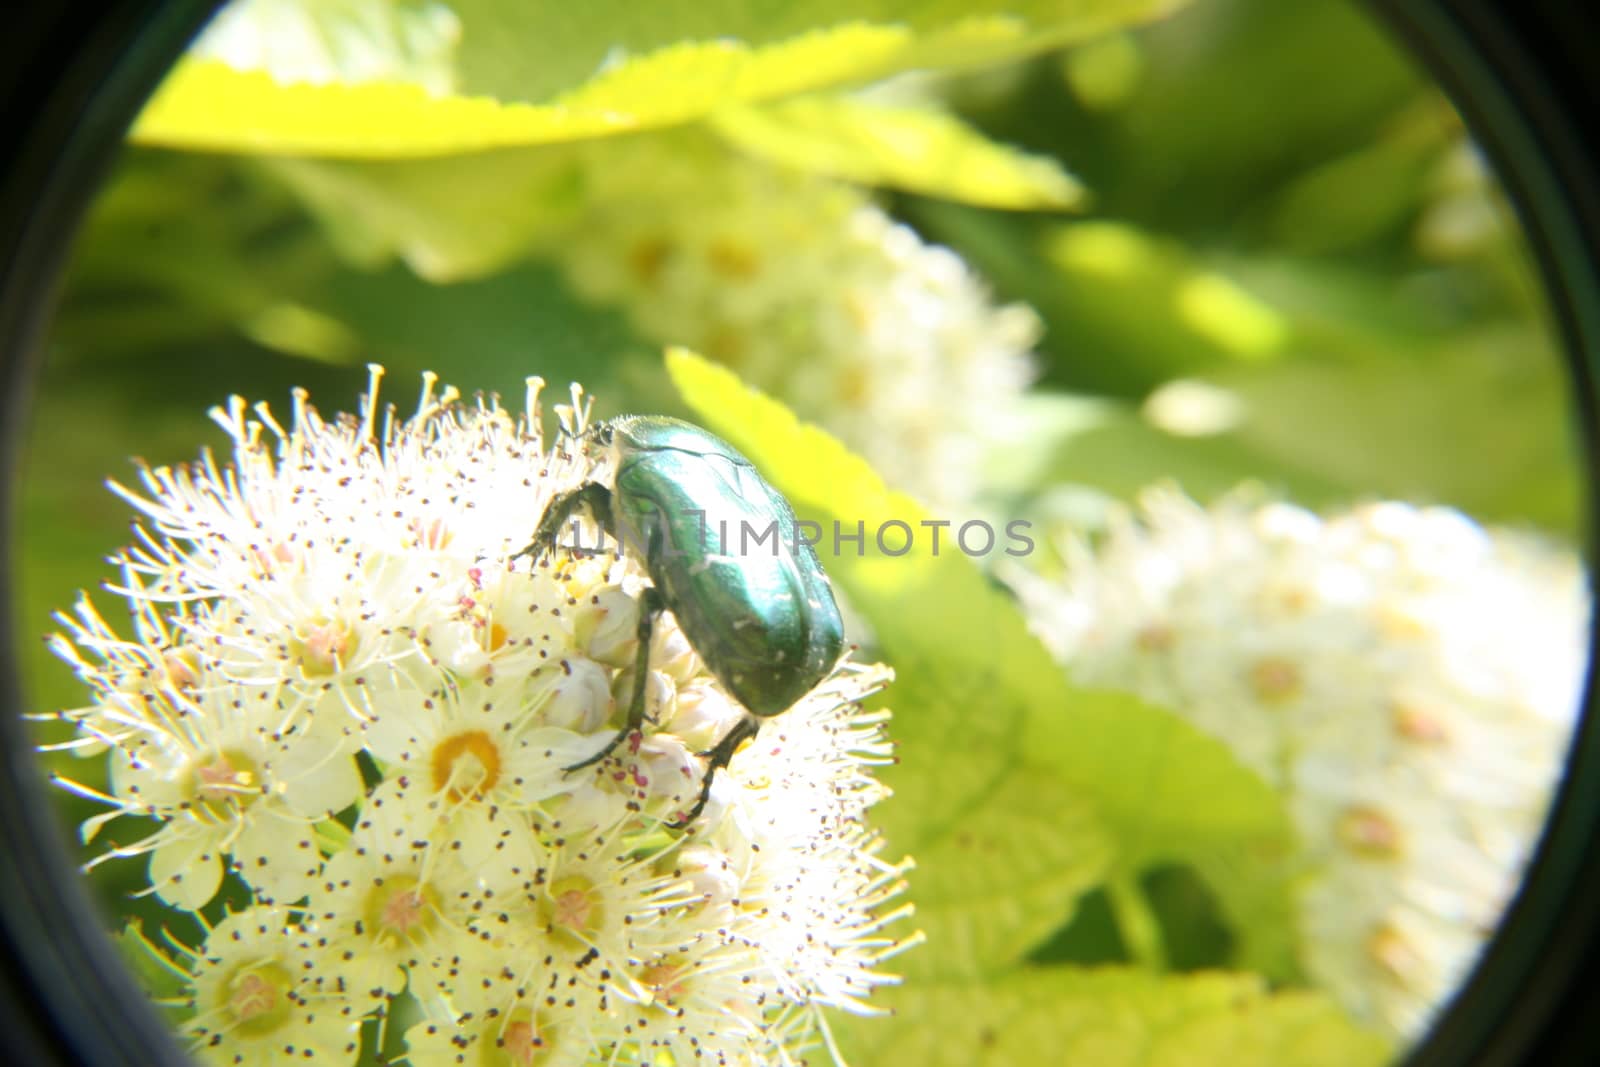 June bug in the garden